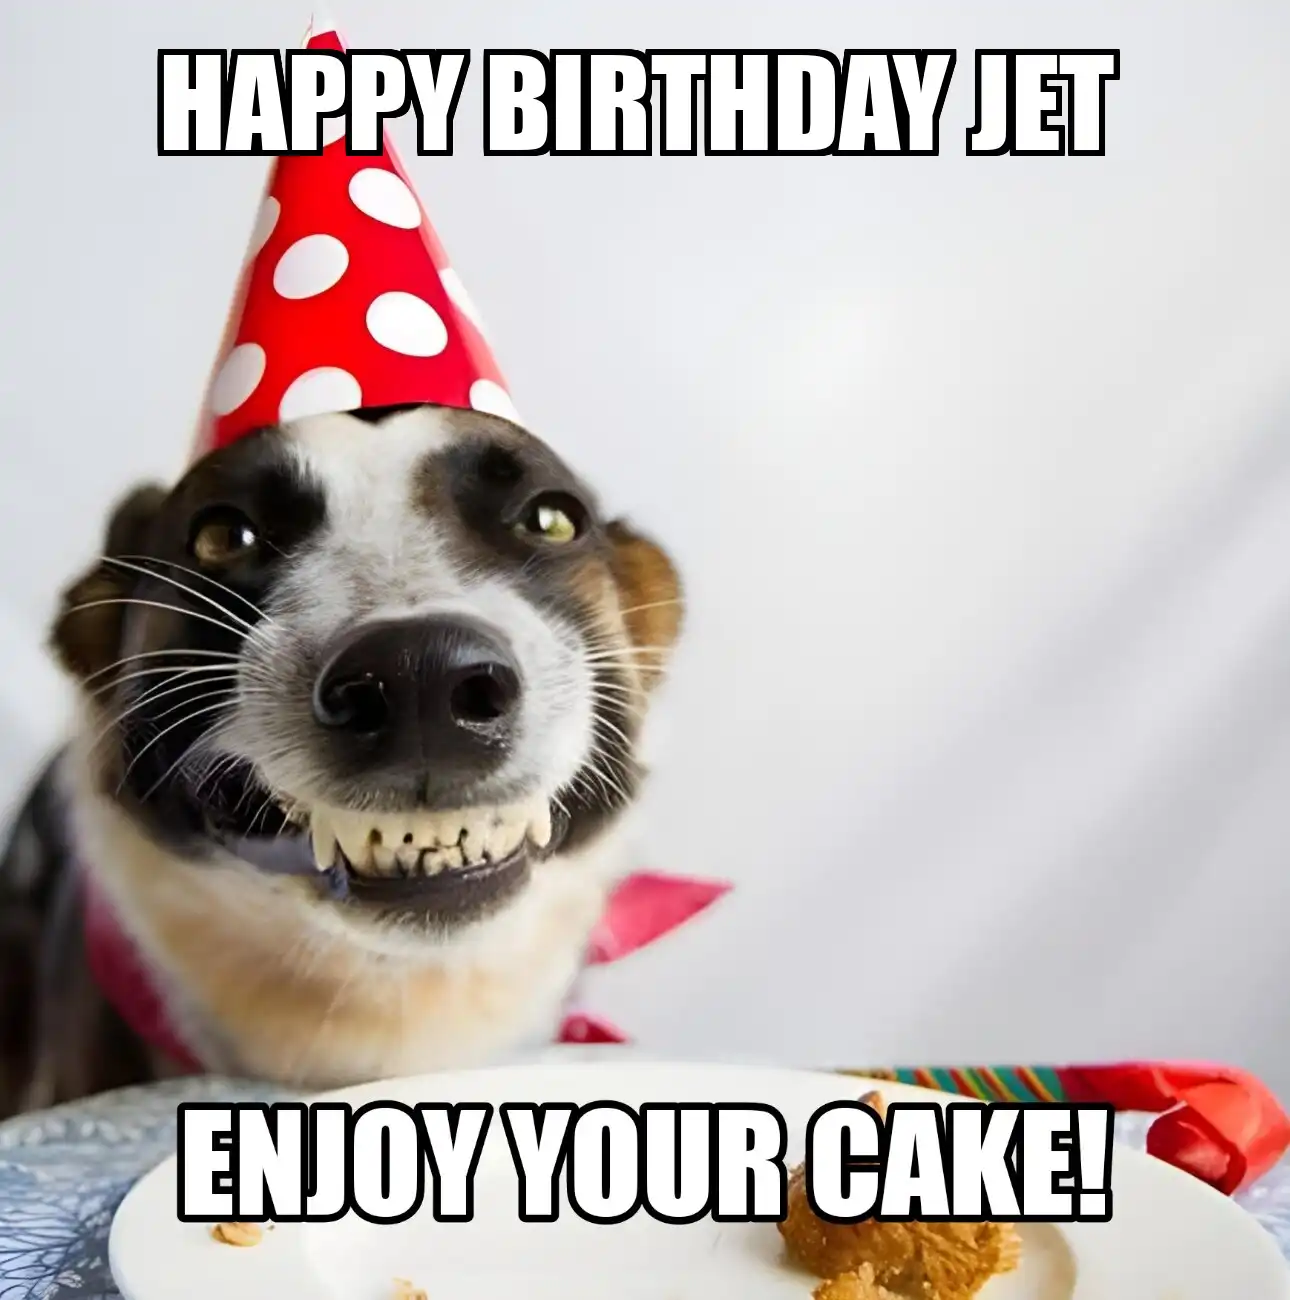 Happy Birthday Jet Enjoy Your Cake Dog Meme